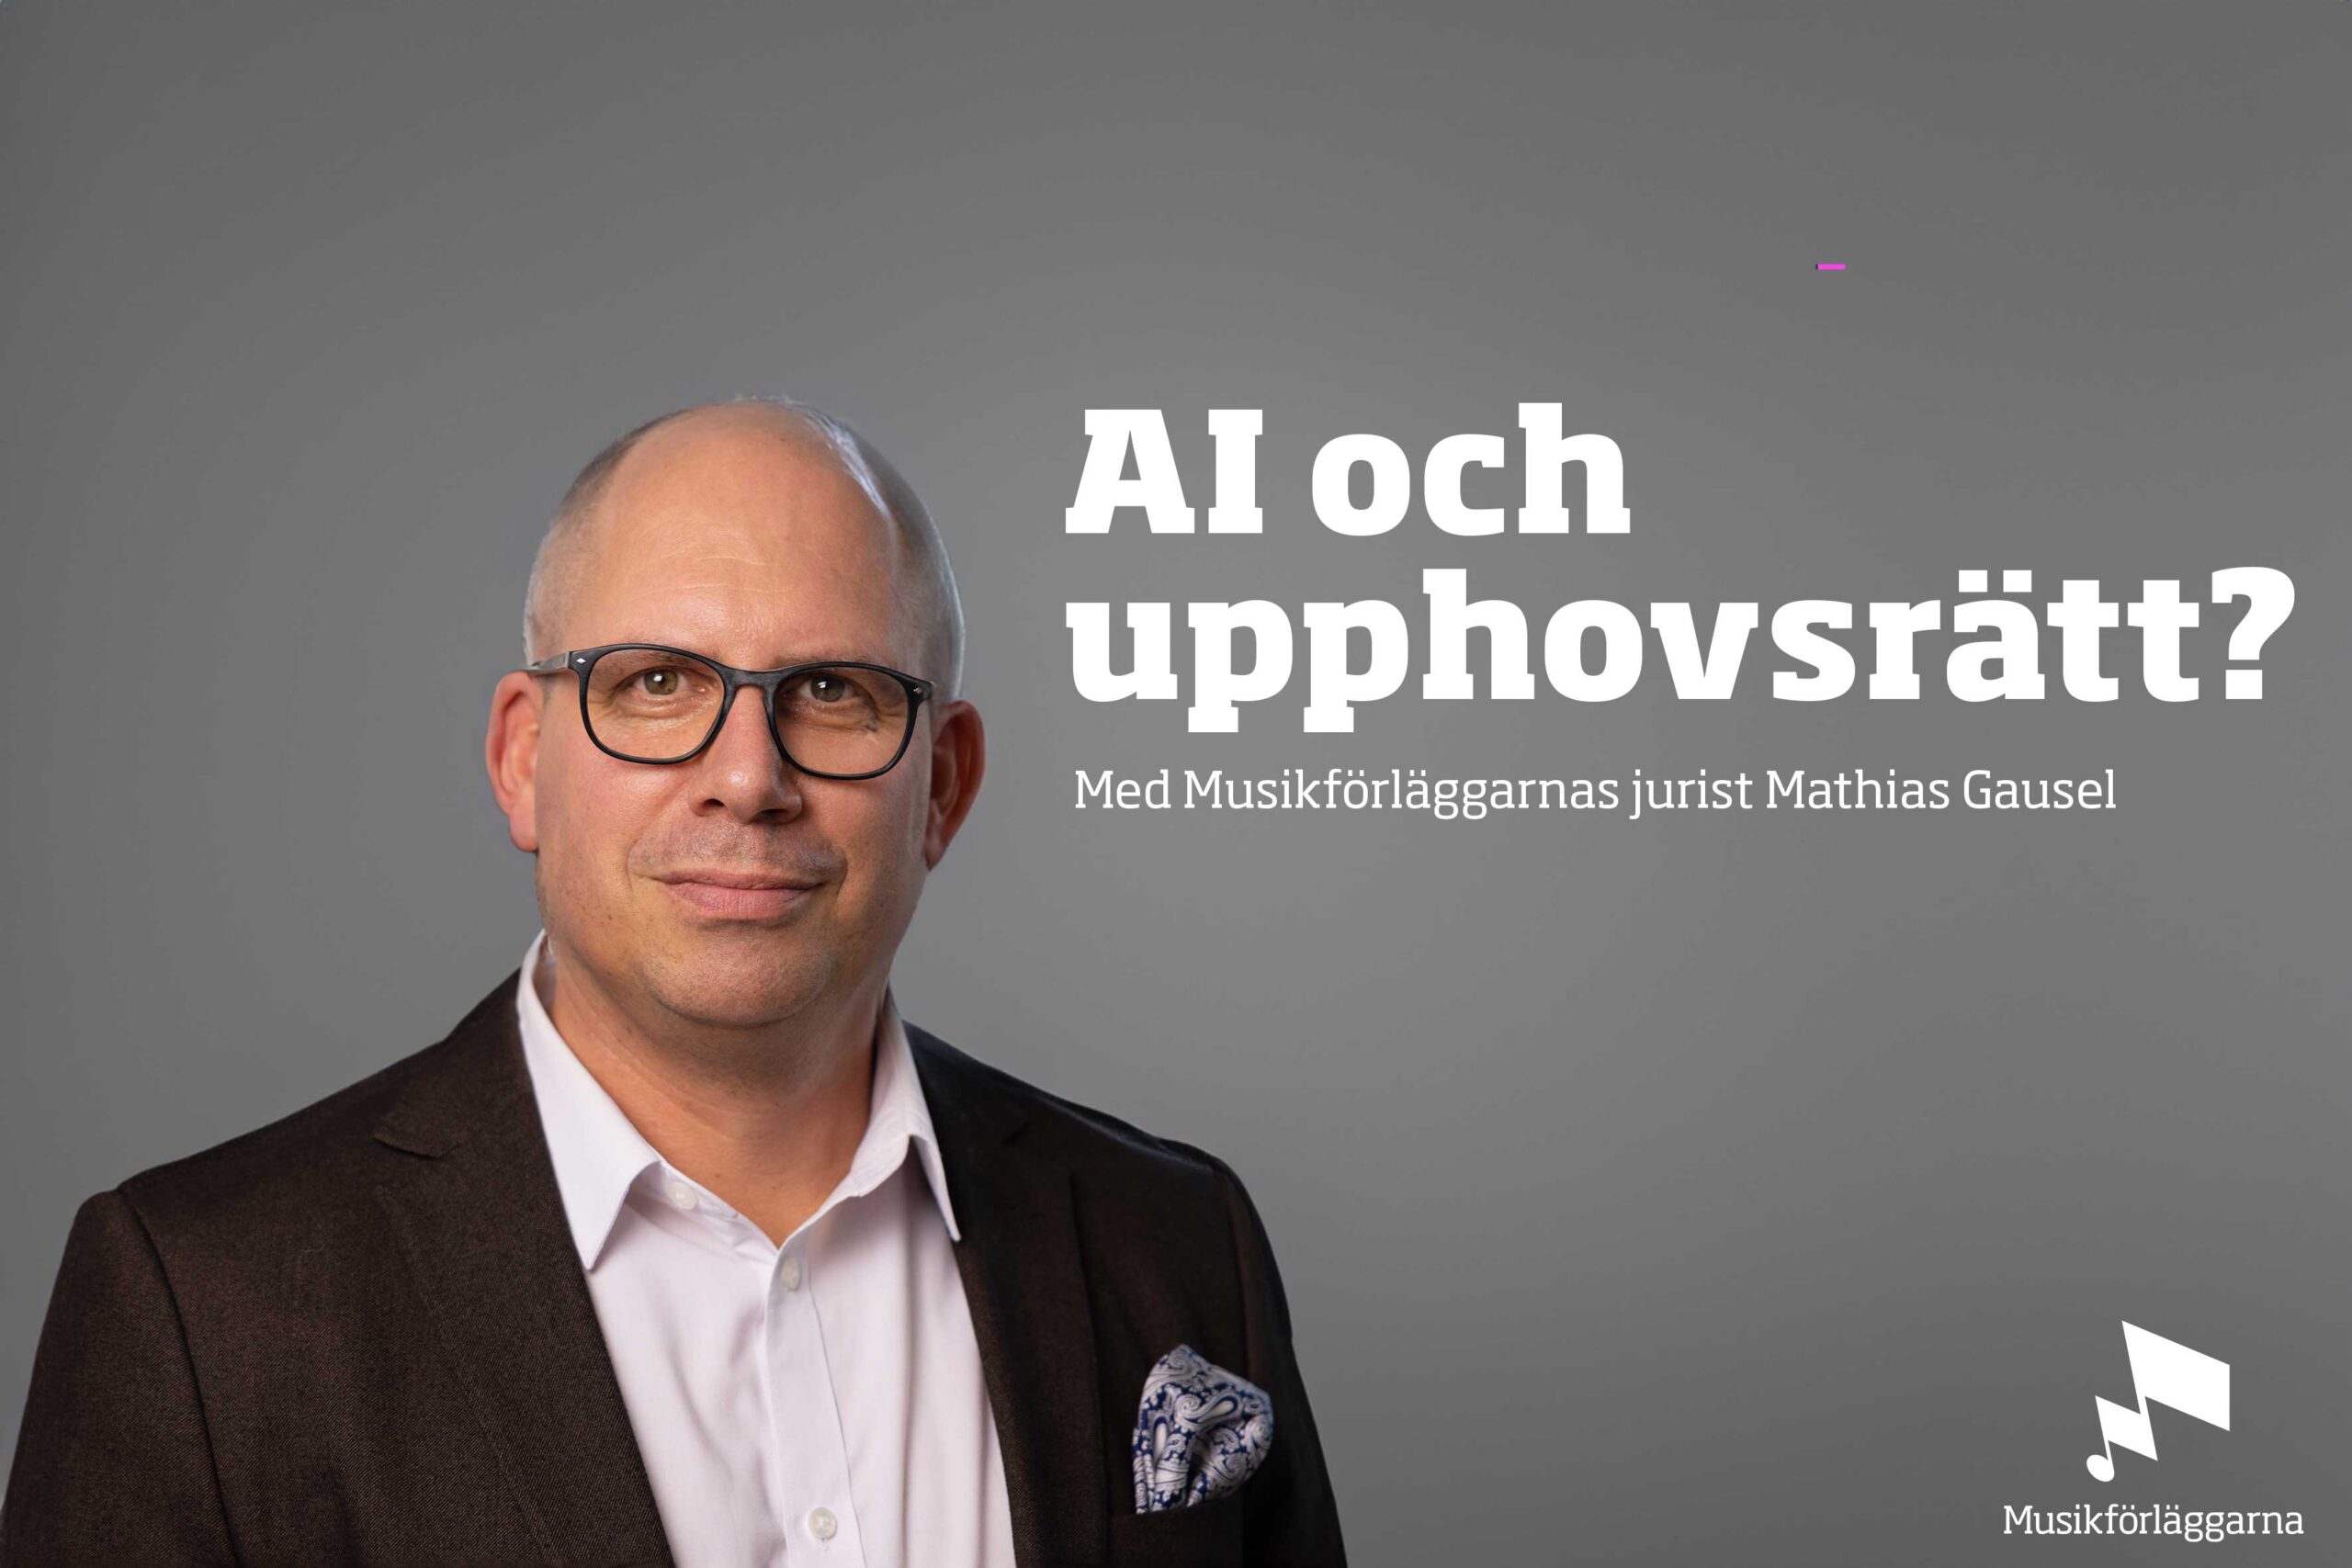 AI och upphovsrätten: Med Musikförläggarnas jurist Mathias Gausel